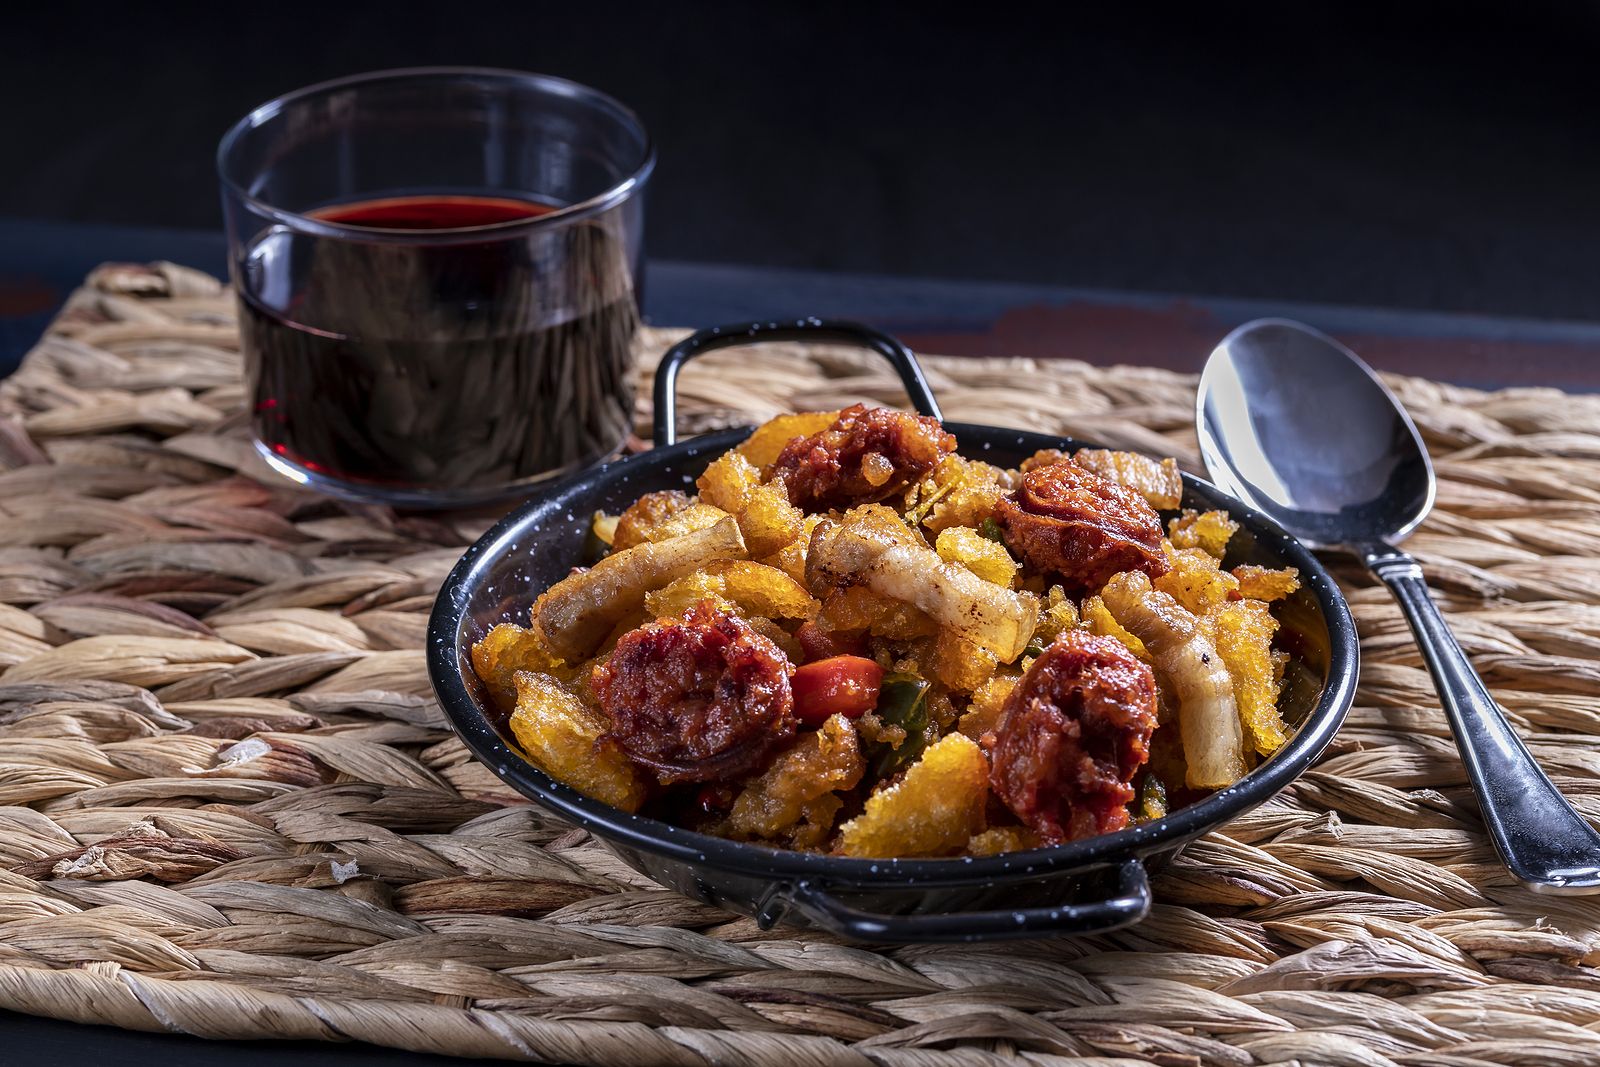 Celebra el Día de Extremadura a través de los platos más típicos de su gastronomía